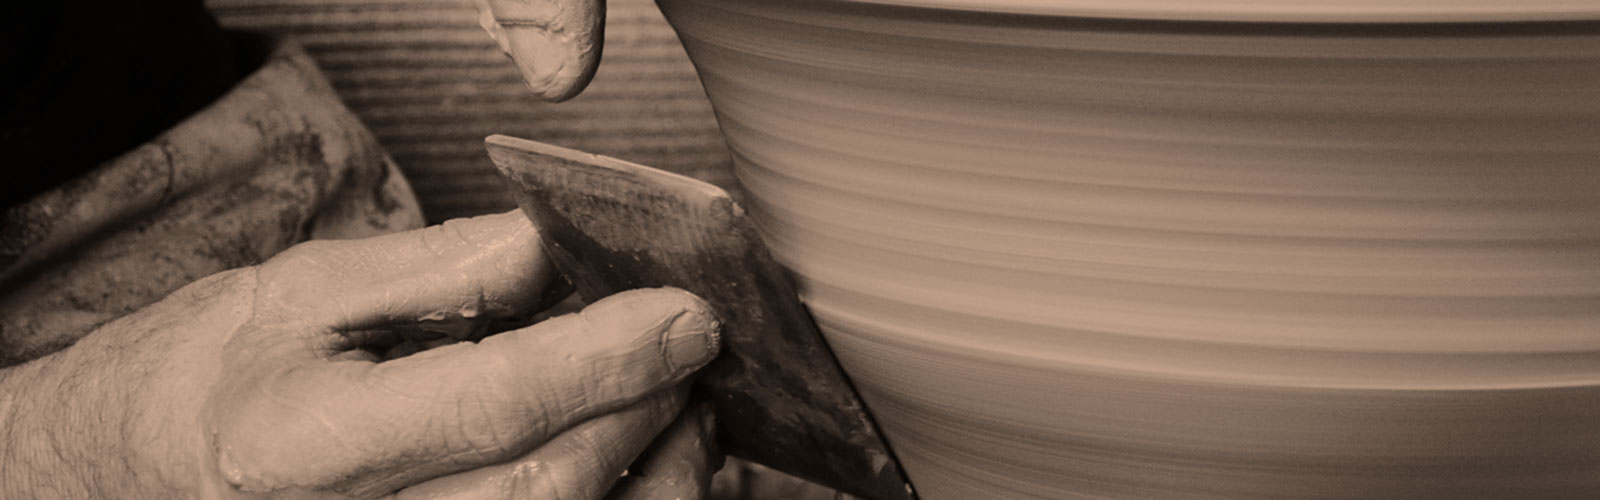 Handmade ceramics in Sifnos